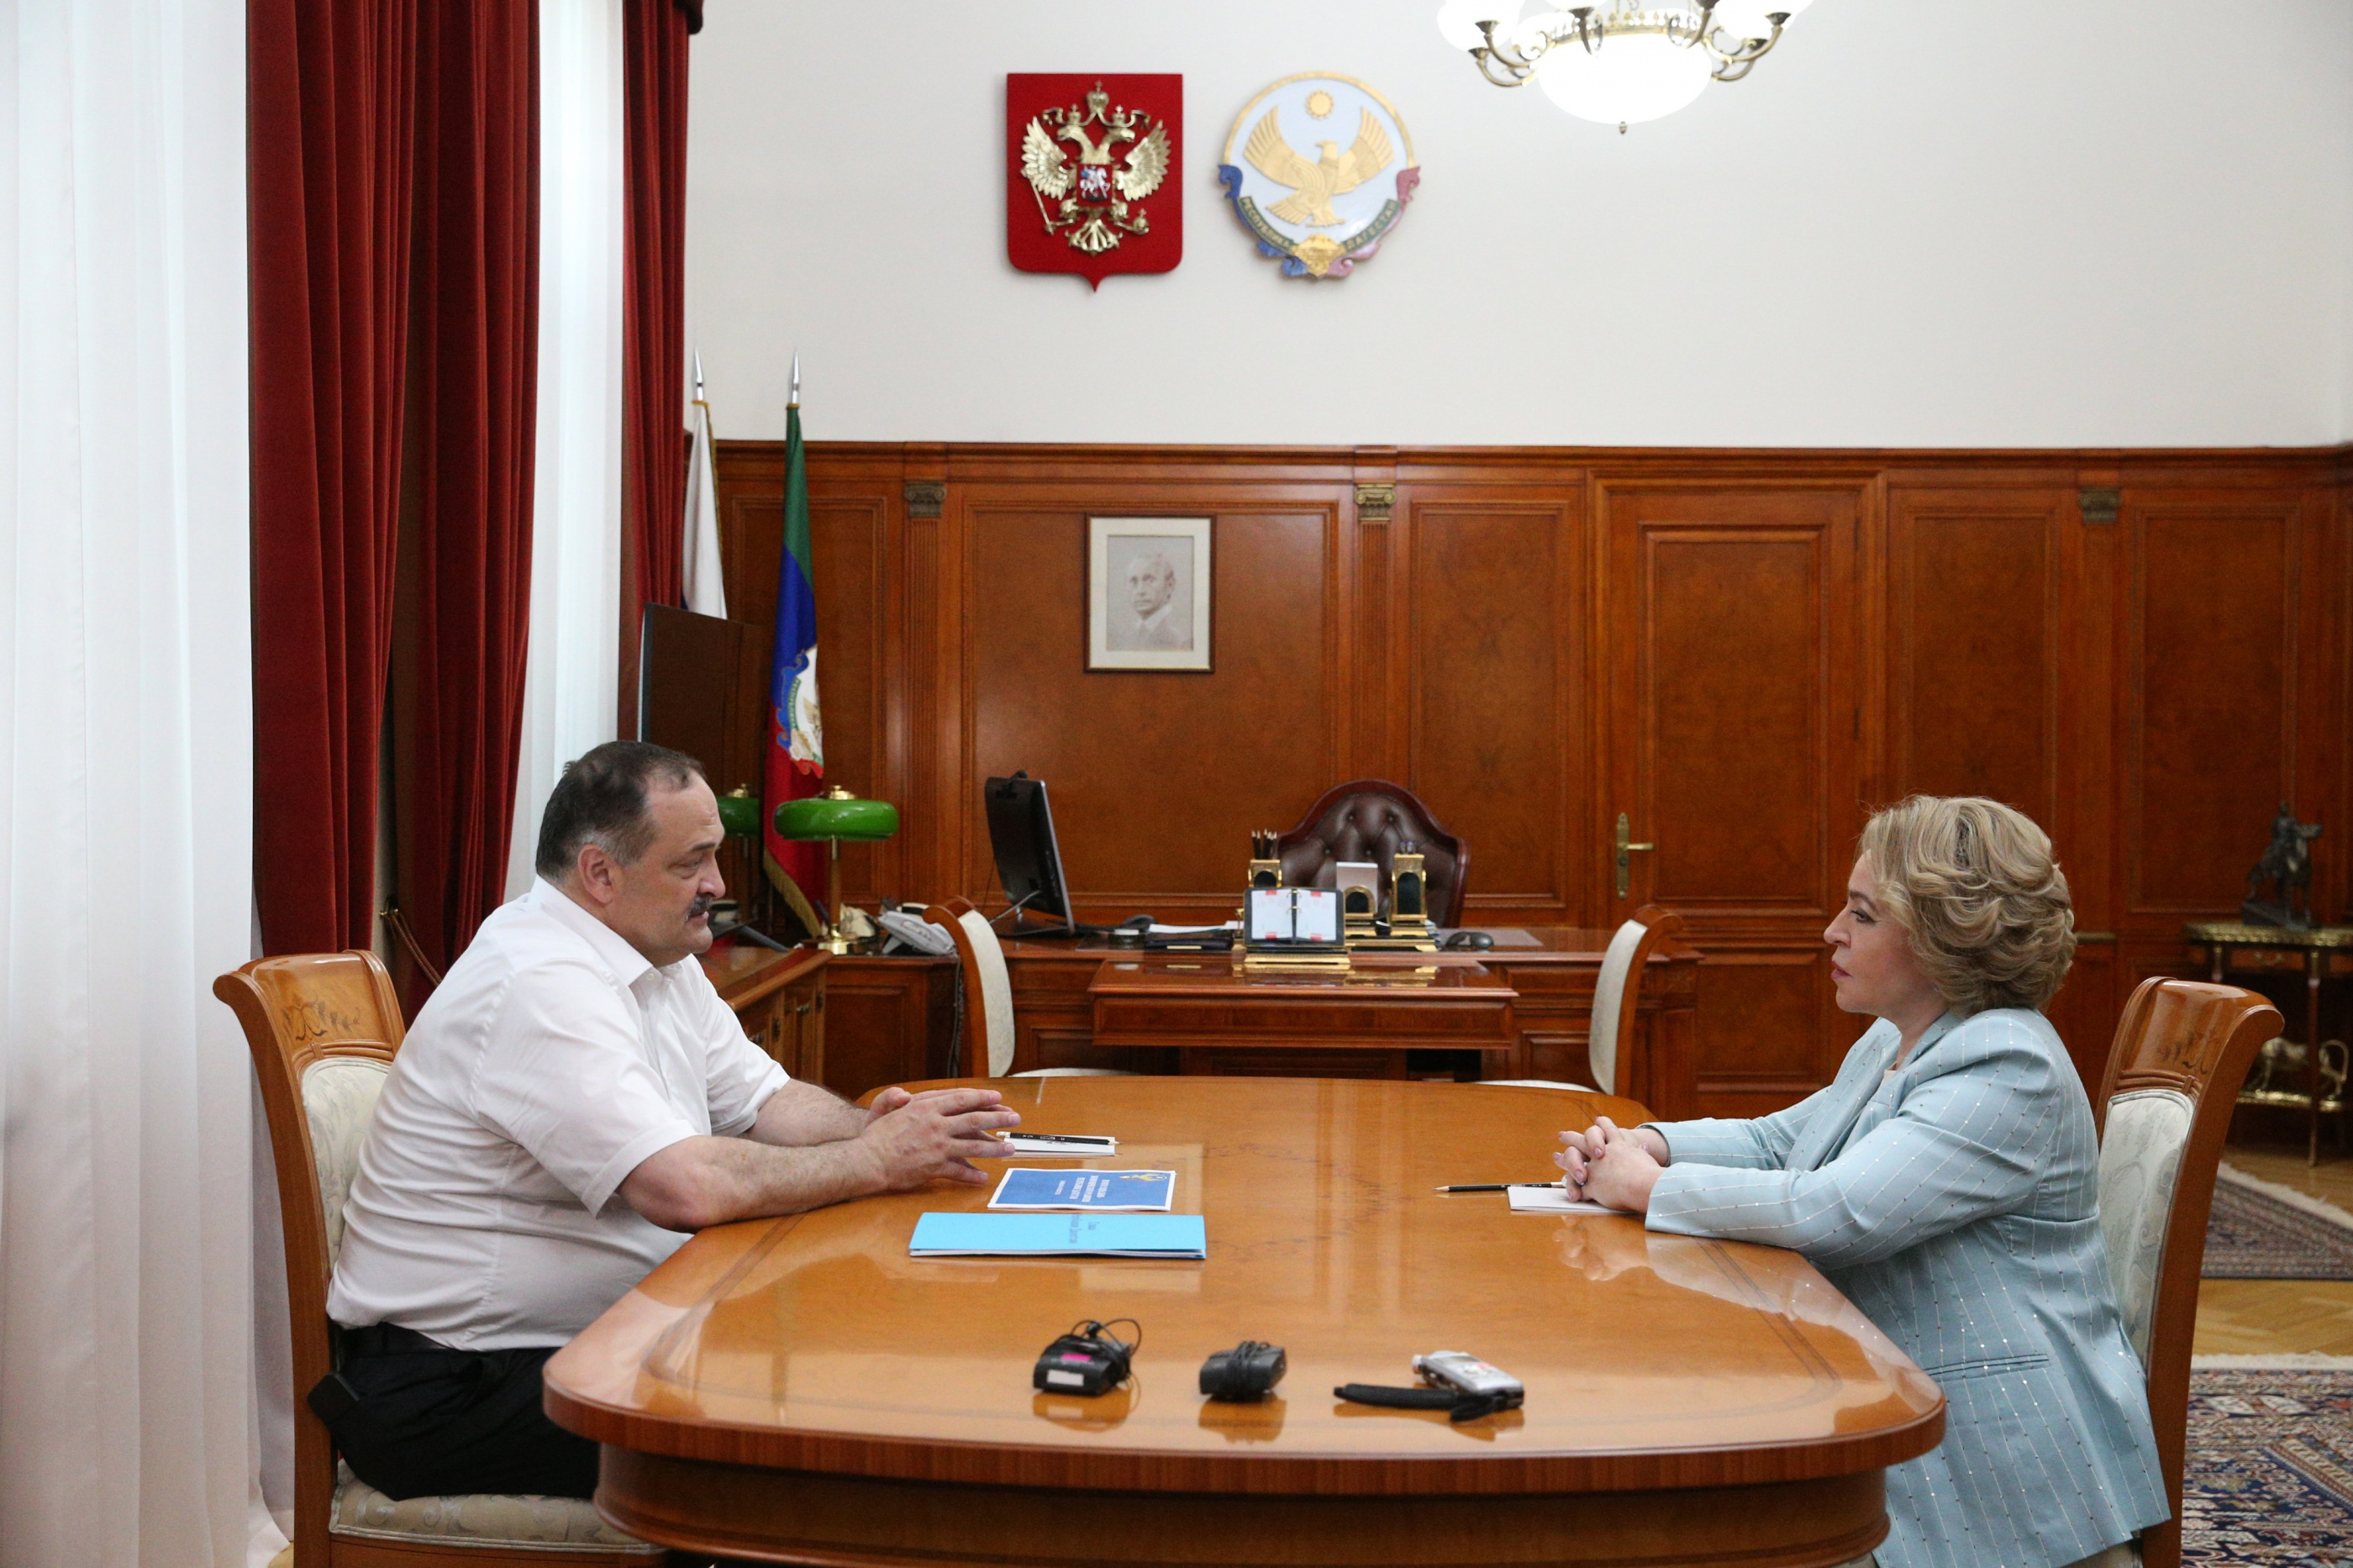 Валентина Матвиенко: «Совет Федерации уделяет большое внимание развитию Дагестана» 